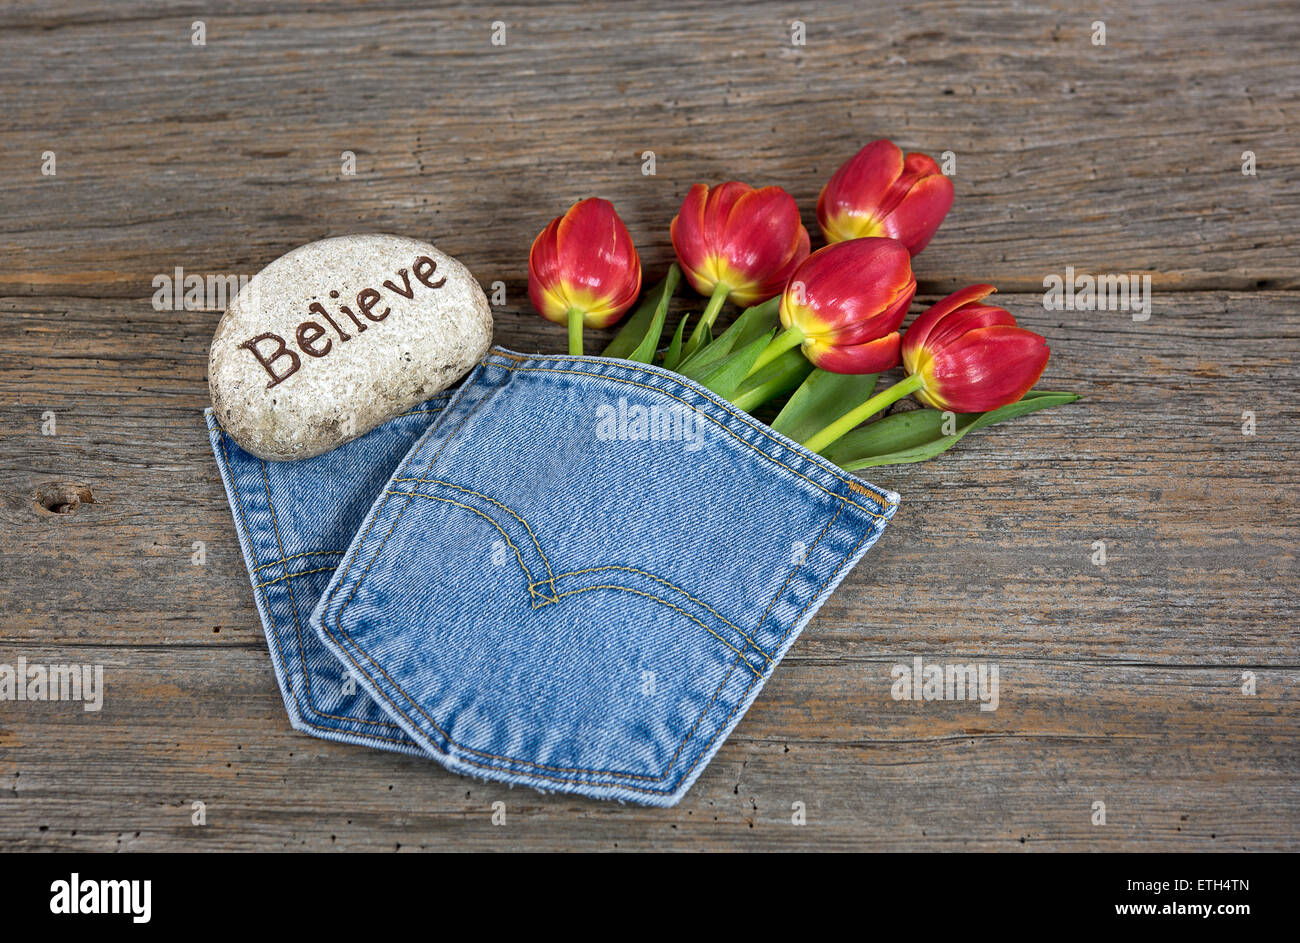 Tulipes rouges en bleu jean avec poche rock d'inspiration rustique sur bois. Banque D'Images